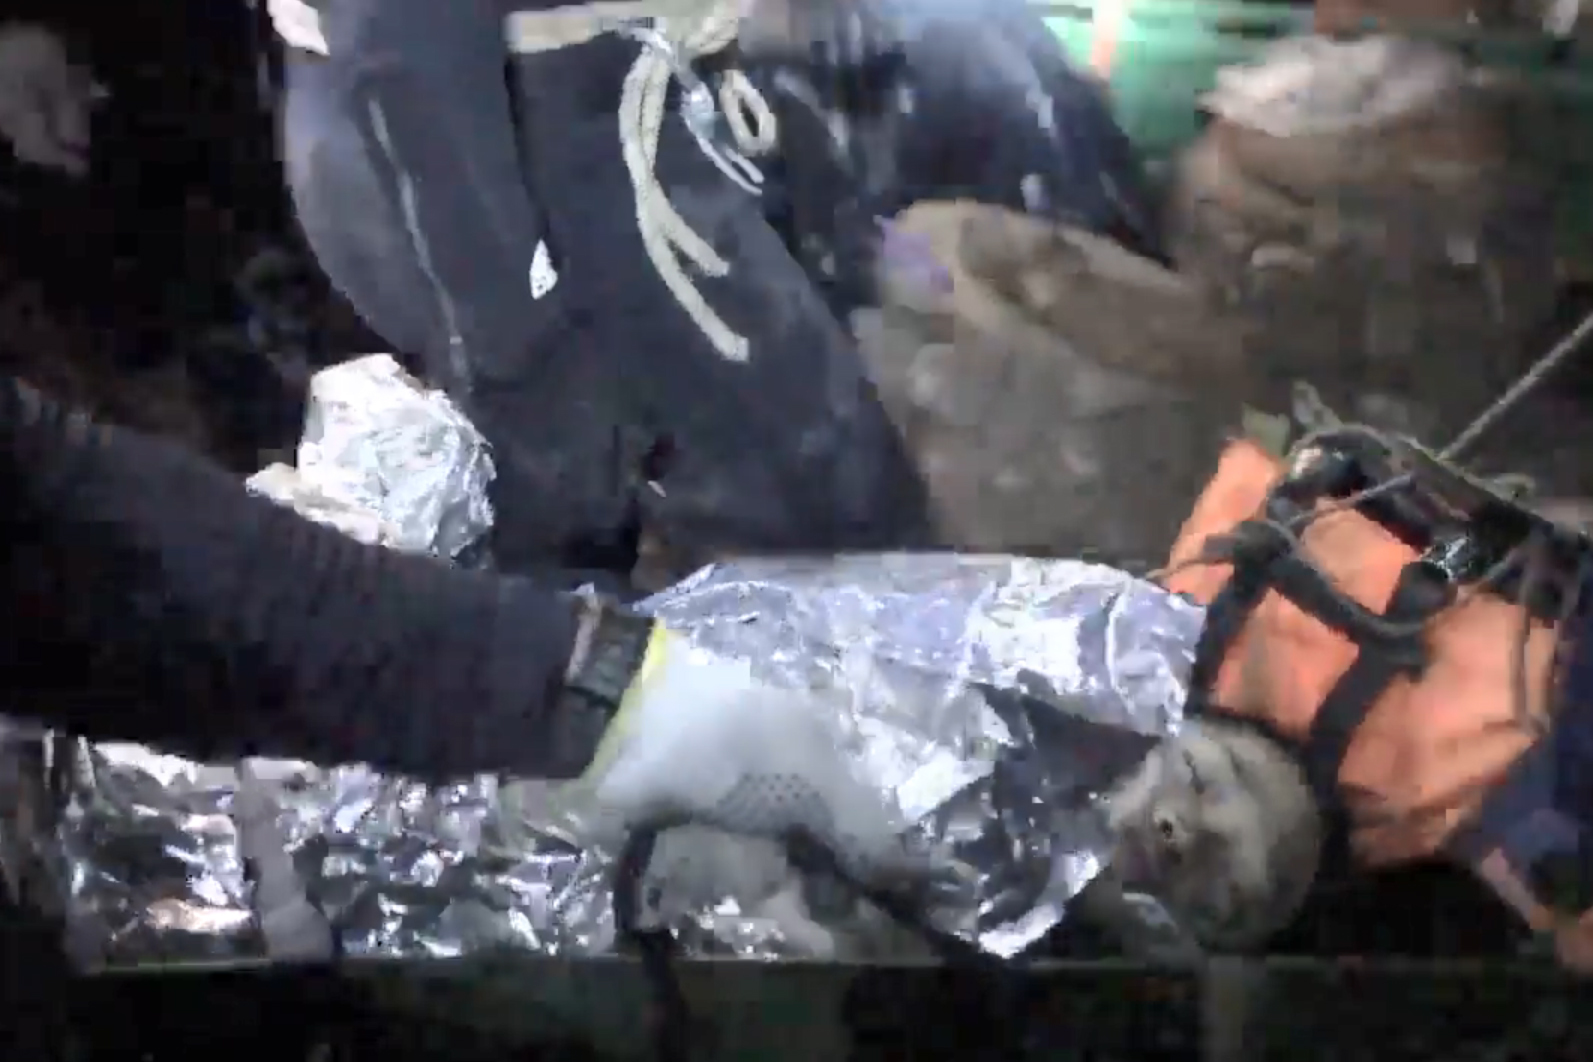 Imagen proporcionada por los rescatistas, en la que aparece uno de los menores dormido en una camilla.